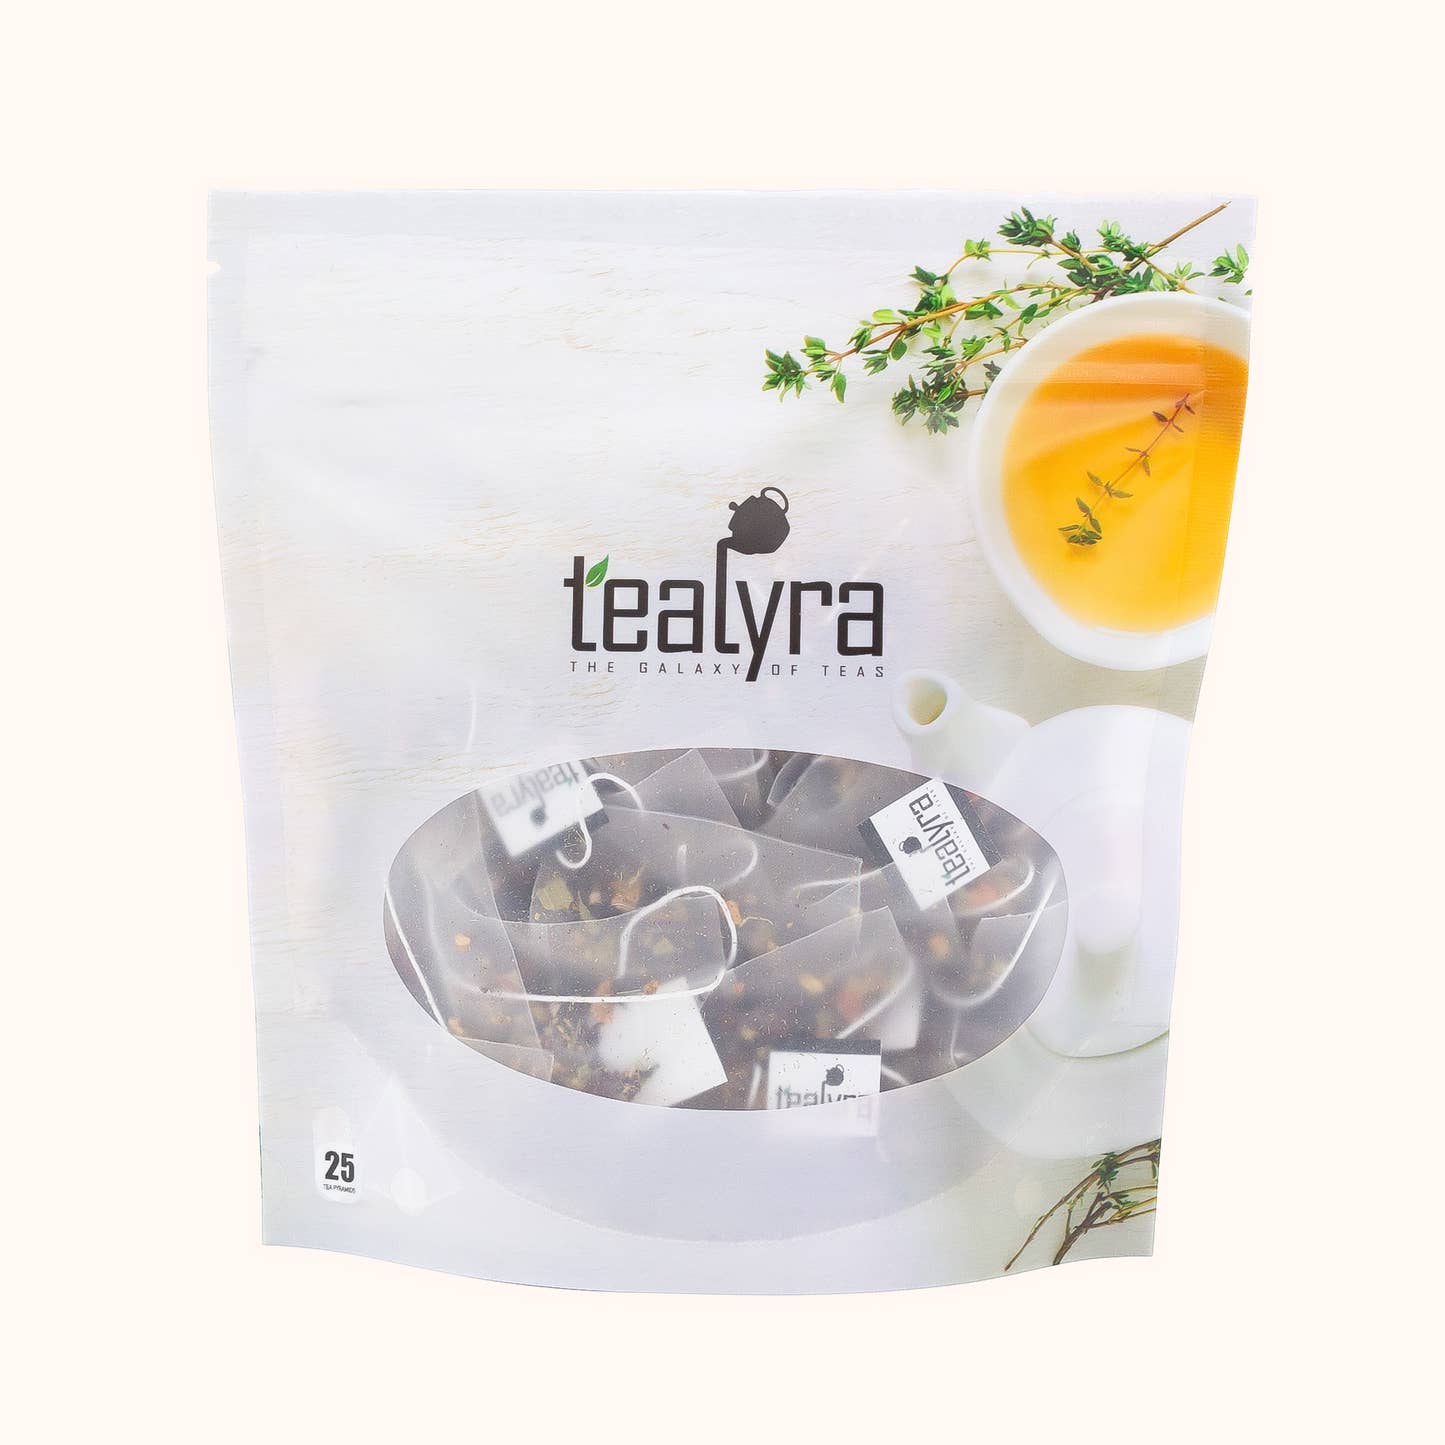 Tealyra's House Blend tea sachet pouch